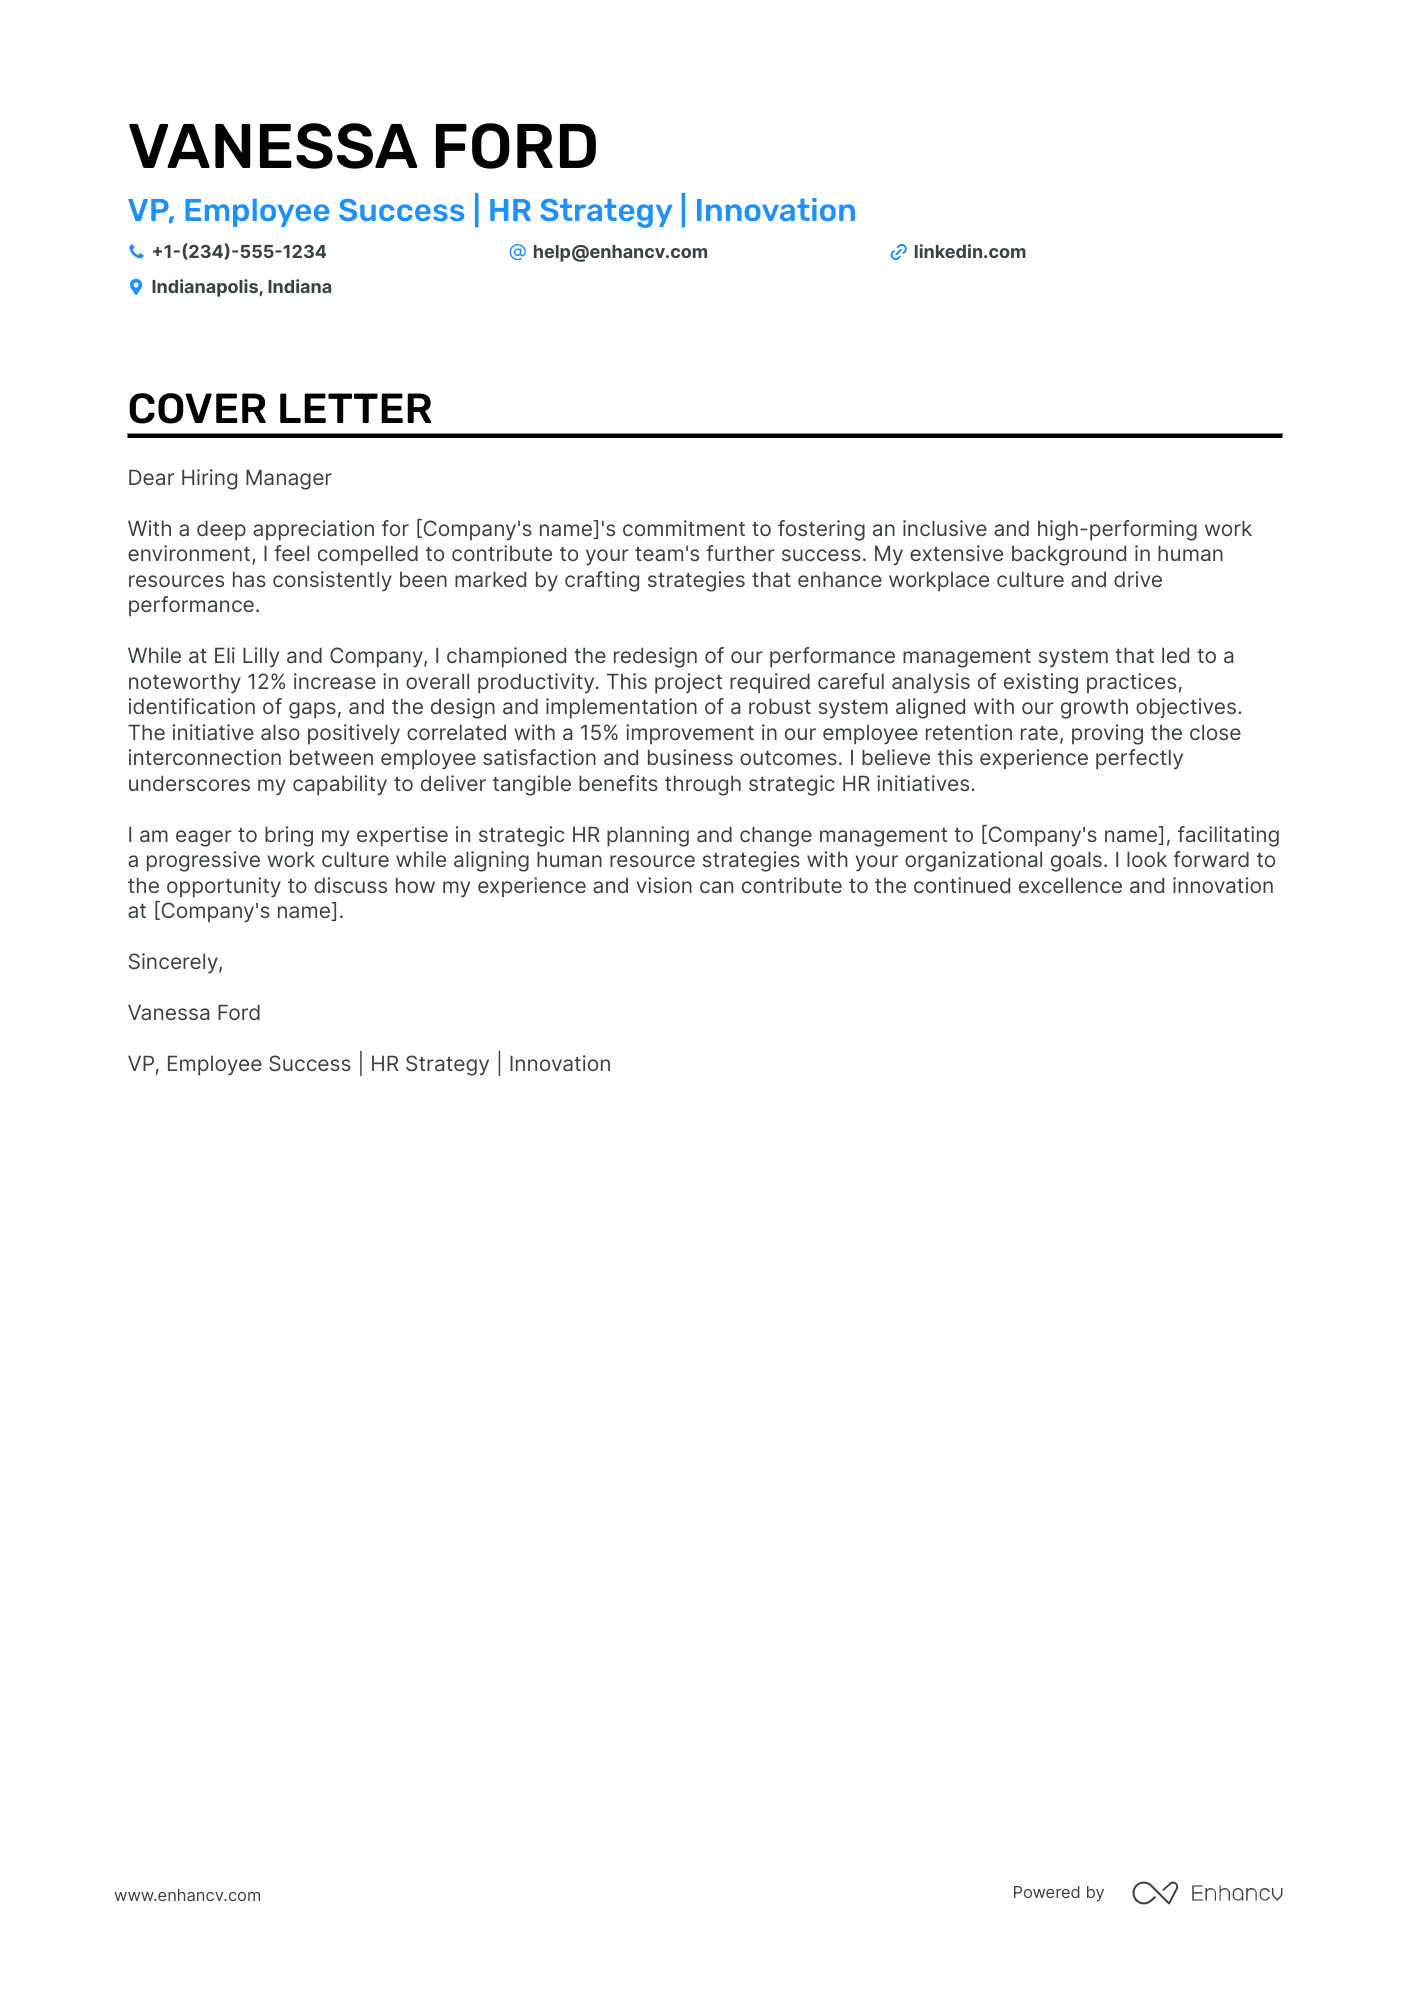 VP HR cover letter